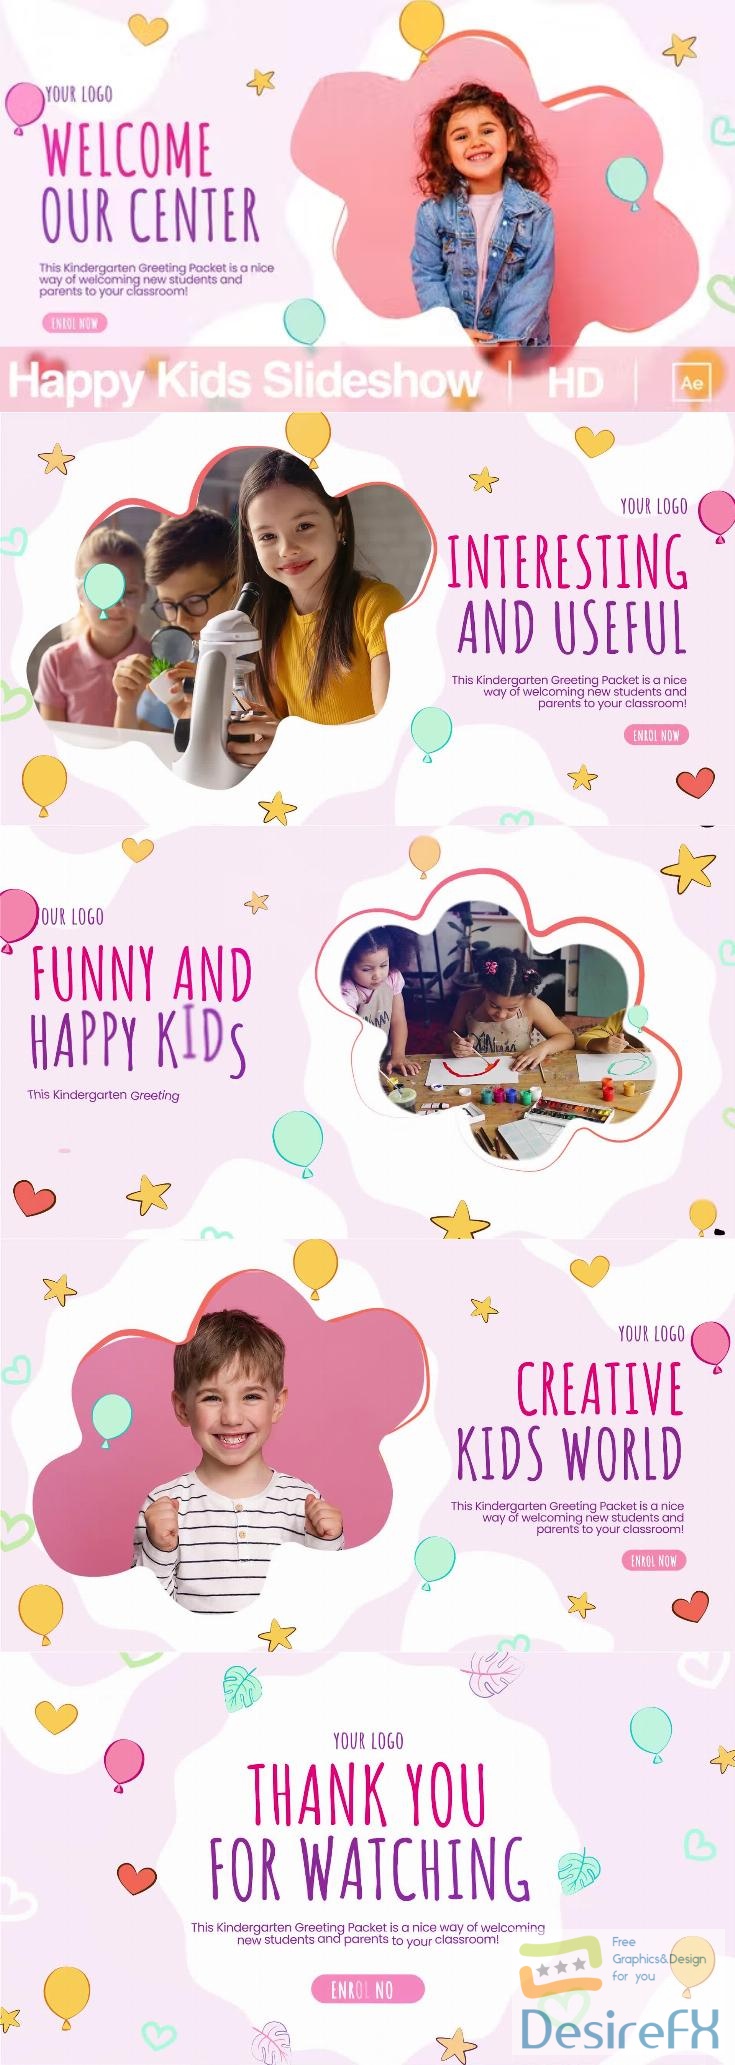 Videohive - Happy Kids Slideshow - 38342478